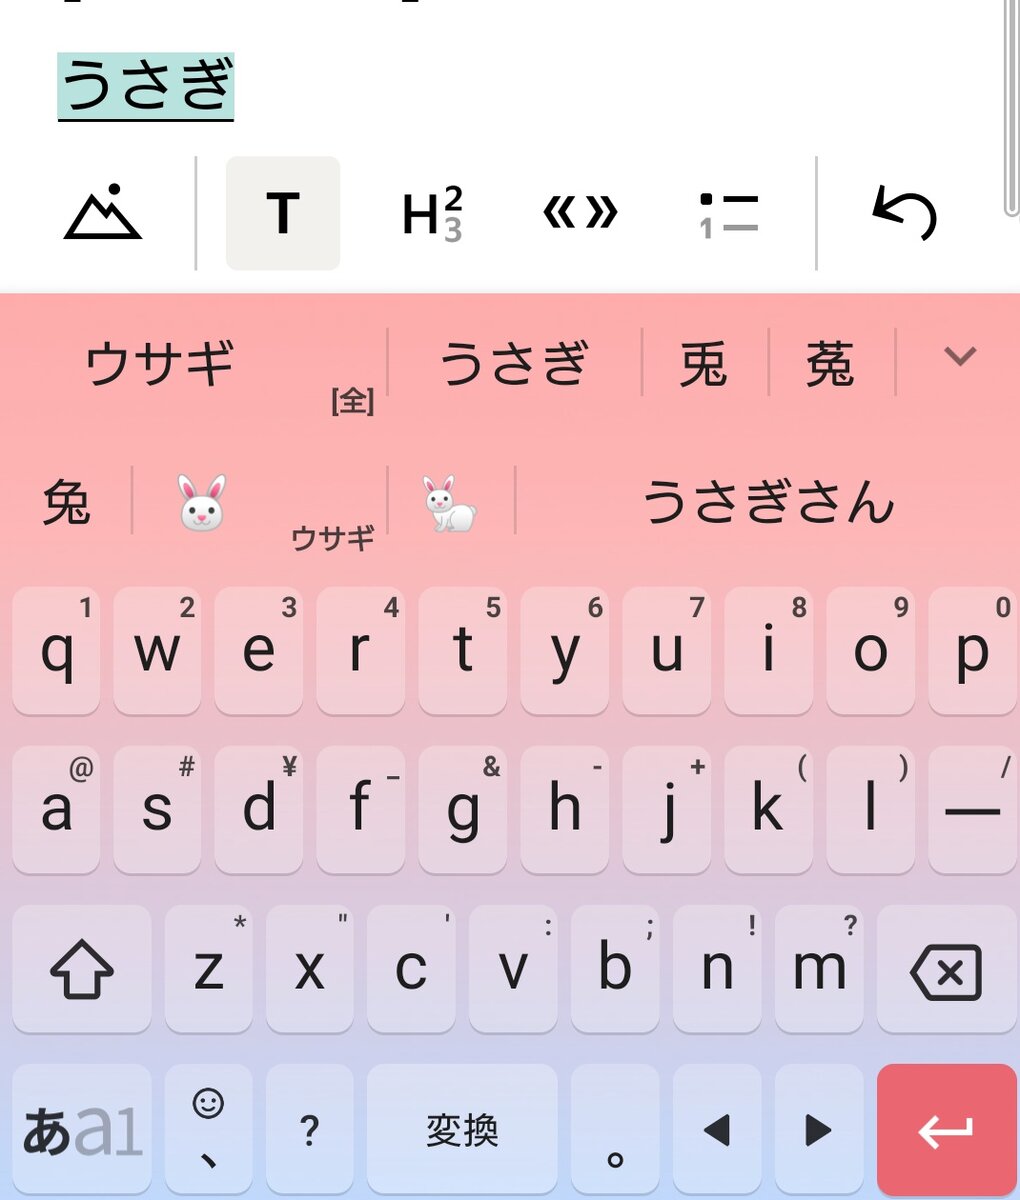 Писающие японки - смотреть онлайн порно фото на erogirlscom